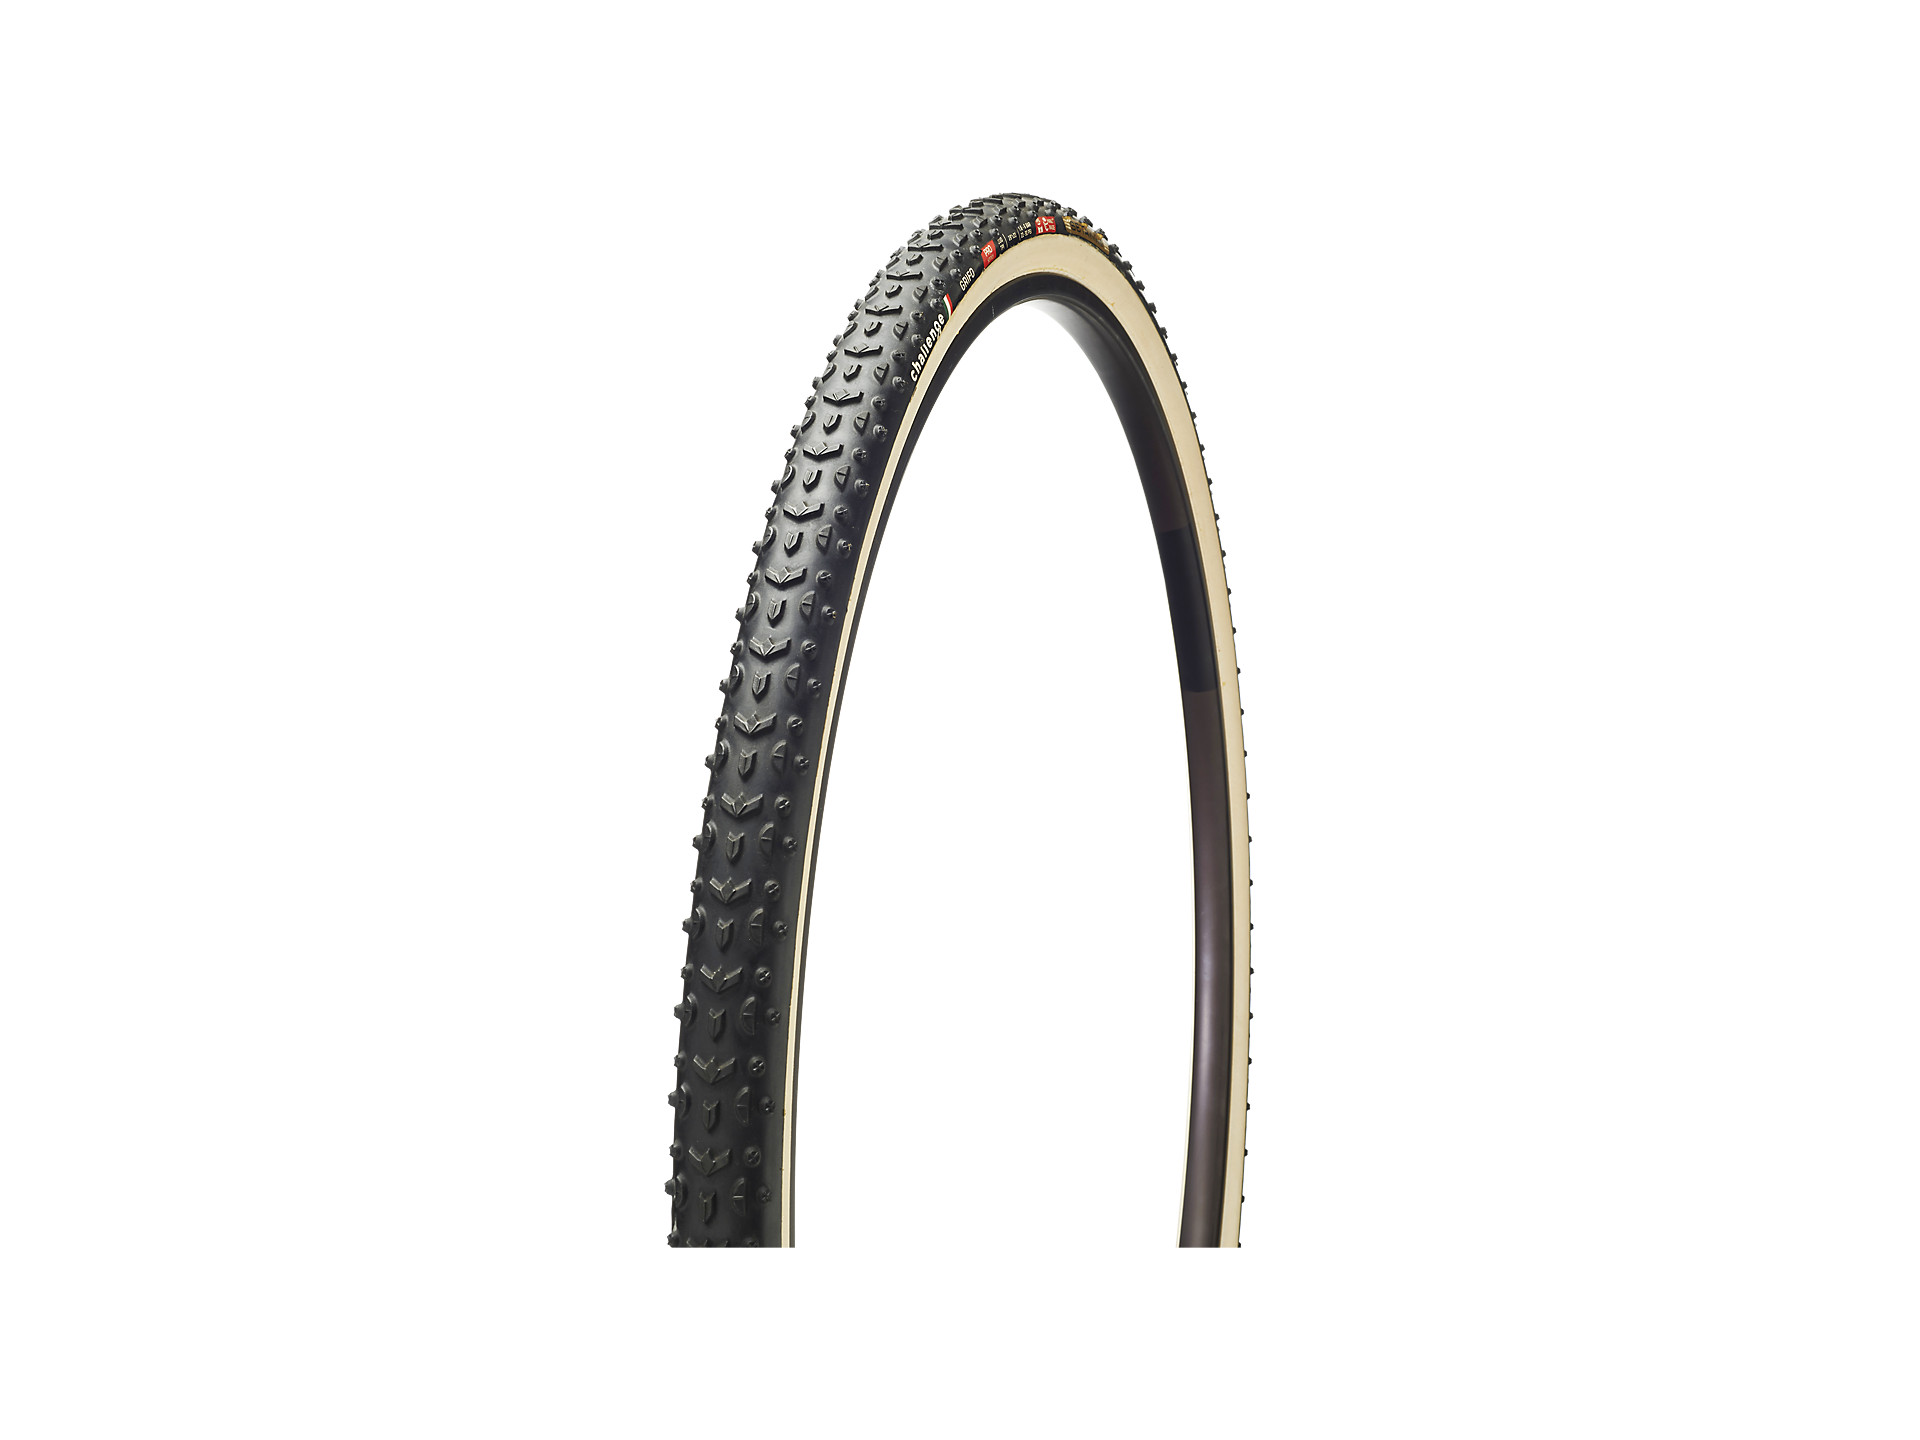 2 tires Challenge Dune PRO cyclocross tubular 700 x 33 